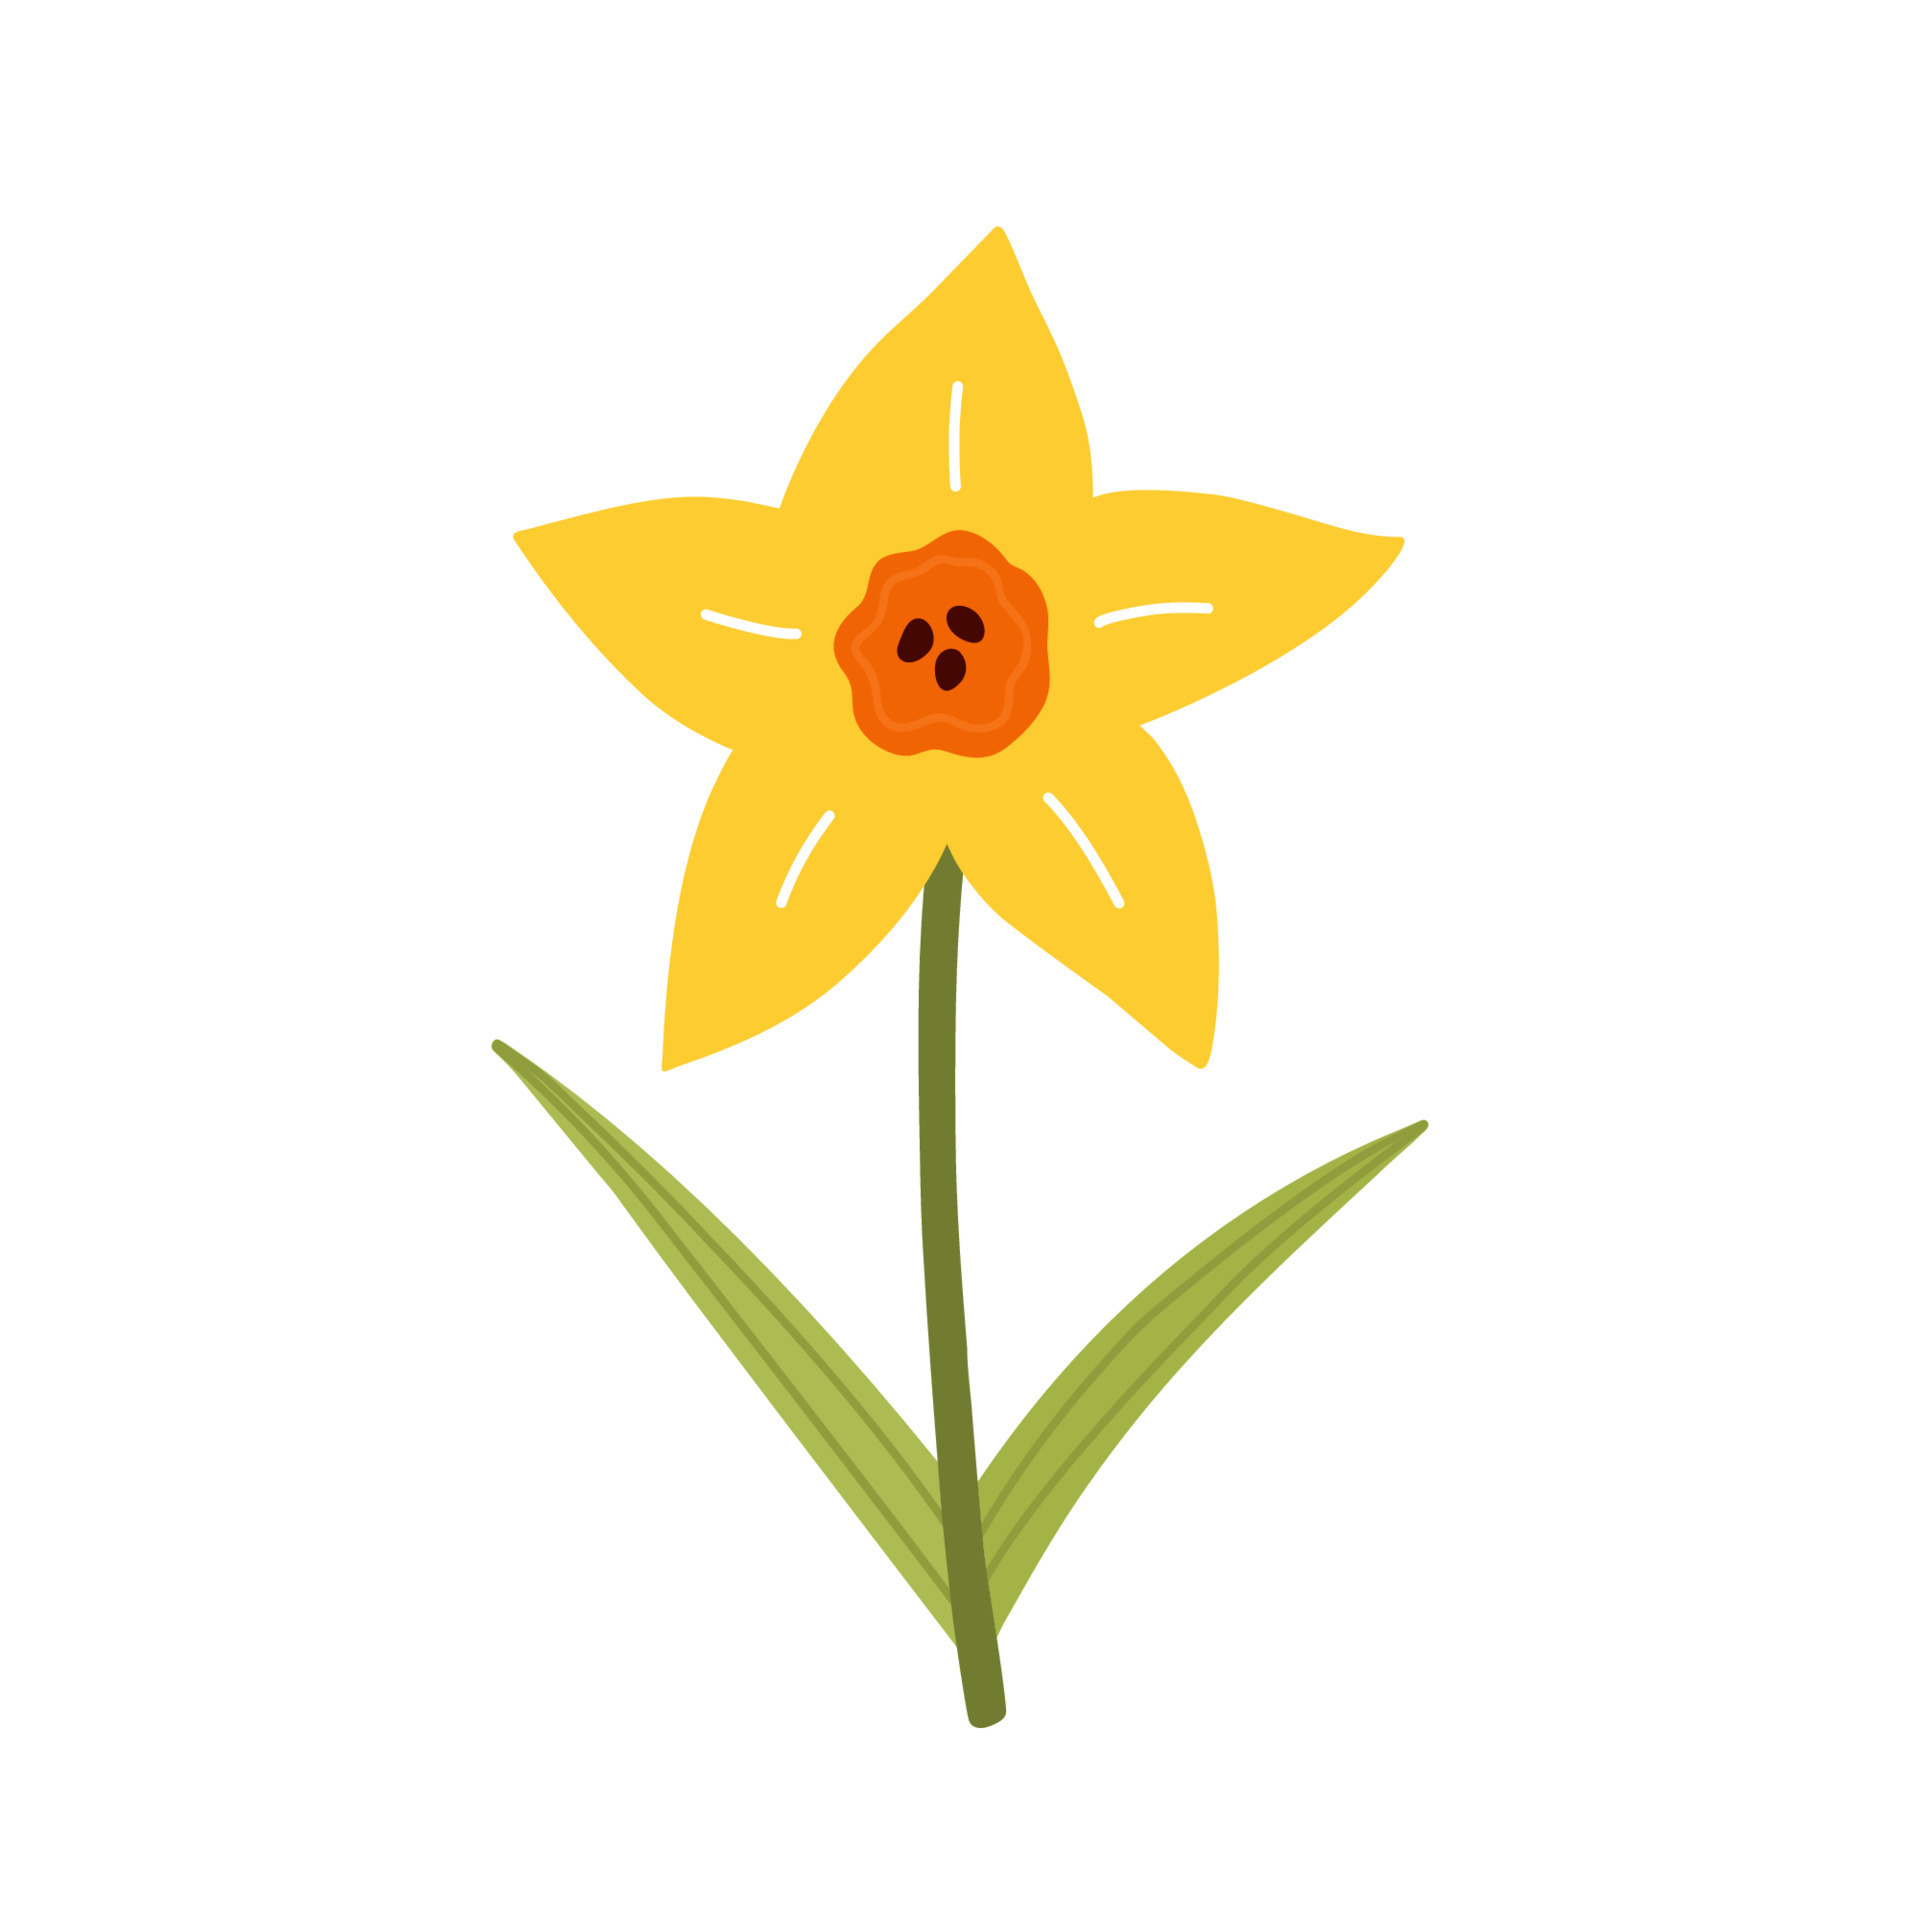 jolie fleur de jonquille jaune avec des feuilles isolées sur fond blanc.  illustration vectorielle dans un style plat dessiné à la main. parfait pour  les cartes, le logo, les décorations, les designs